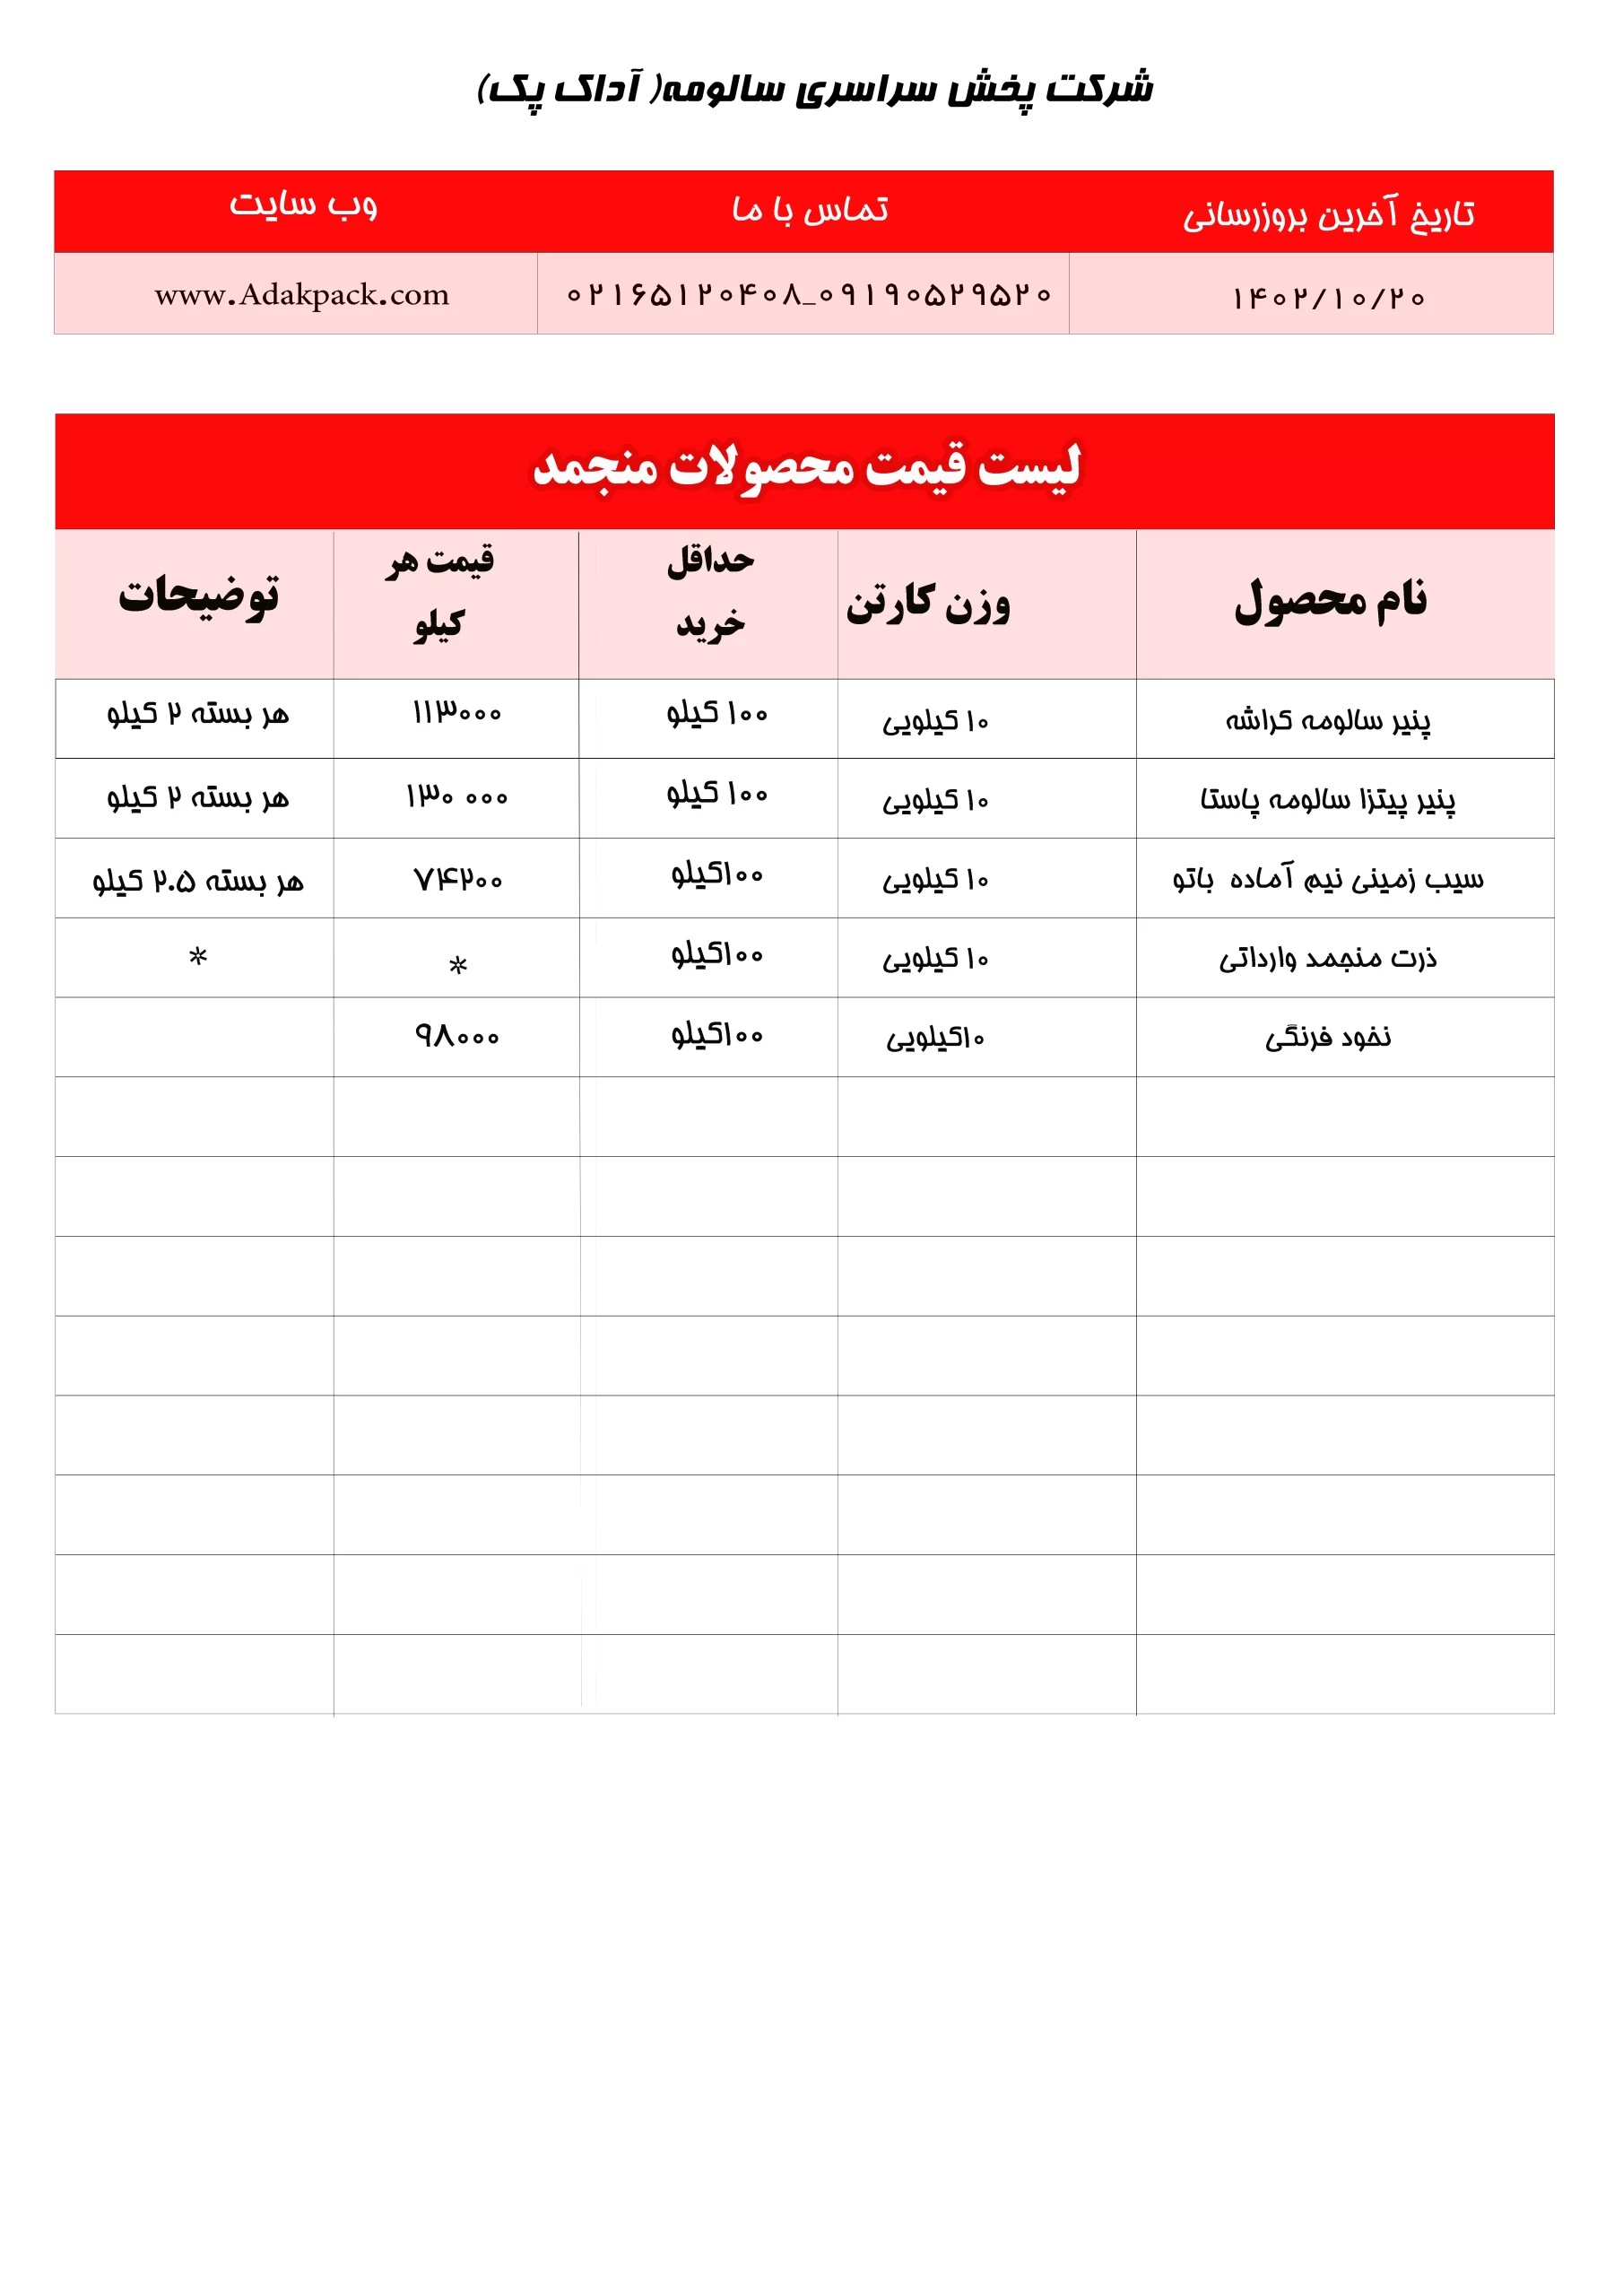 لیست قیمت محصولات منجمد آداک پک